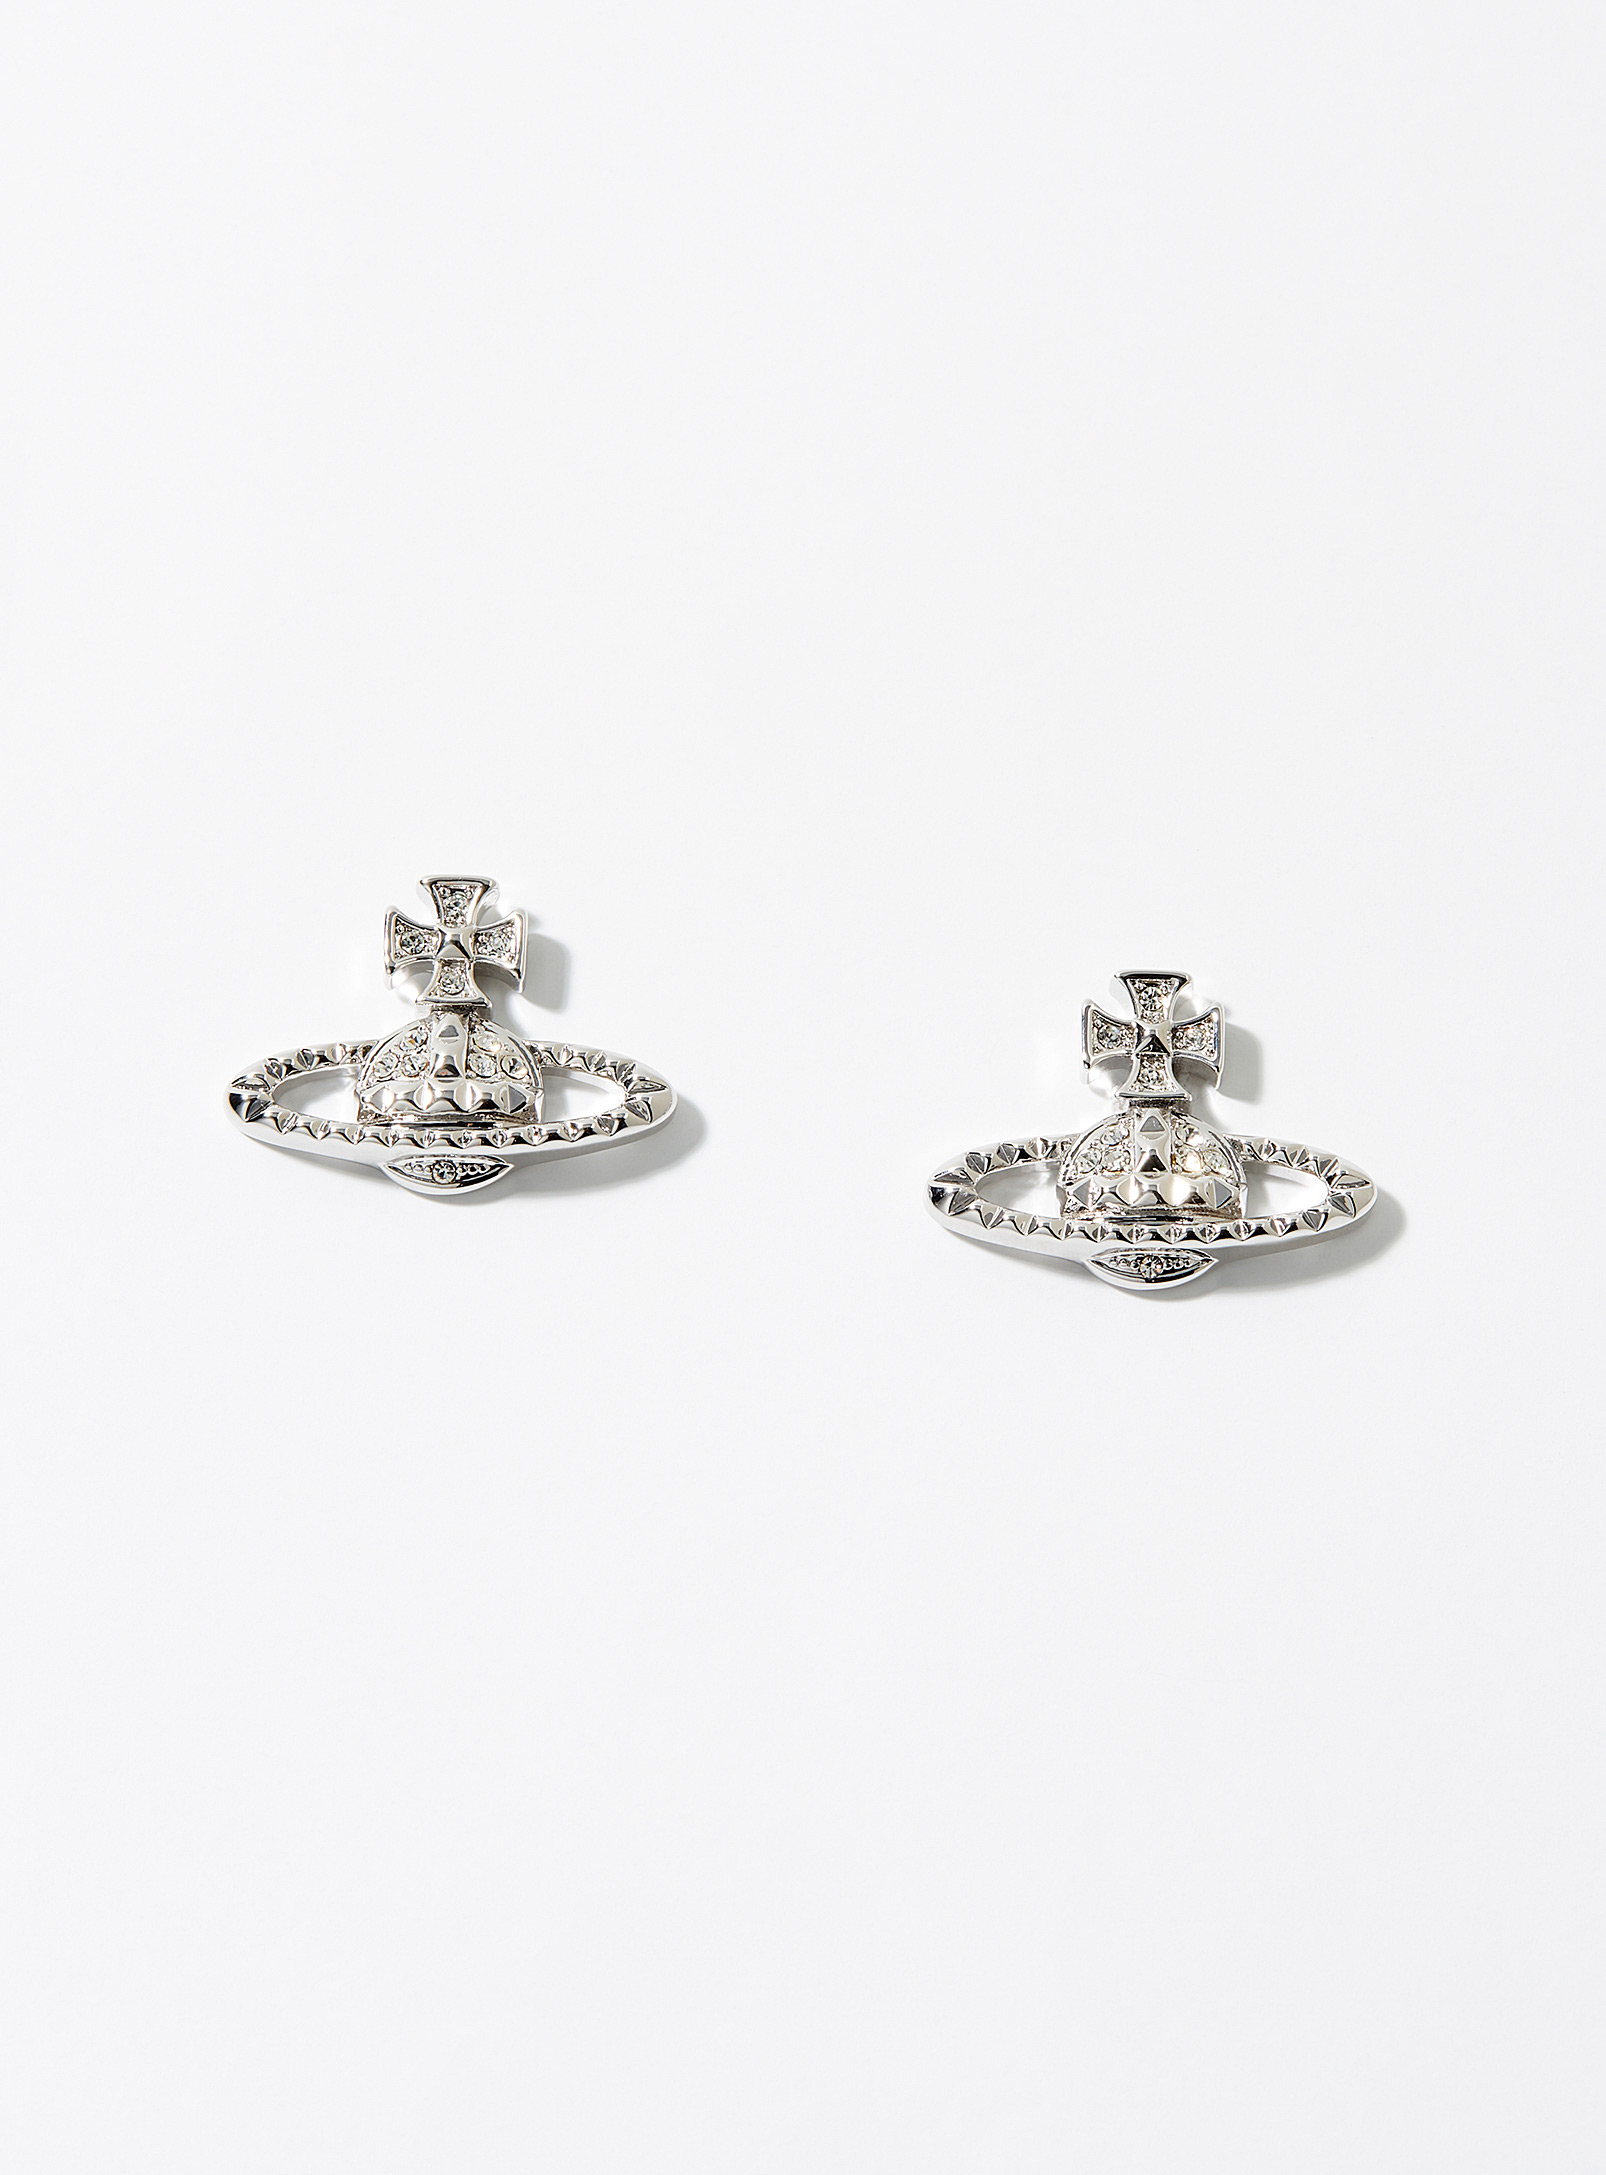 Vivienne Westwood - Men's Mayfair bas relief earrings